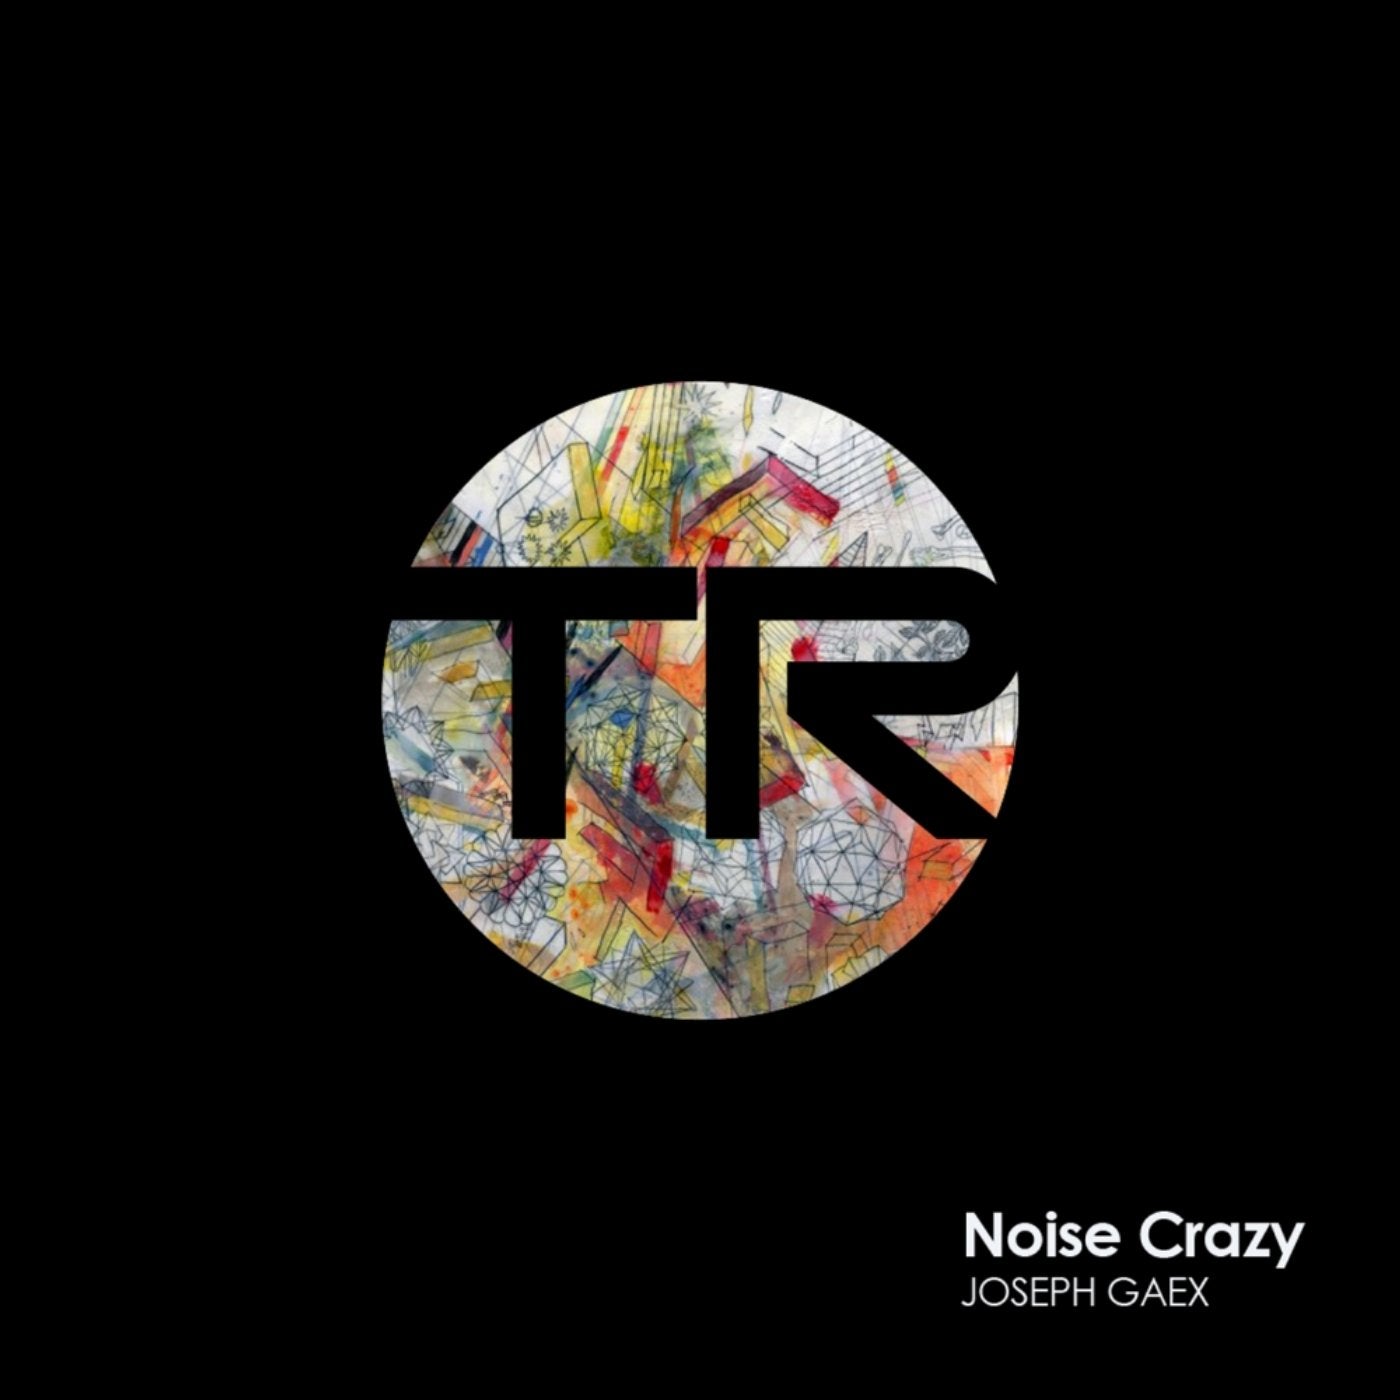 Noise Crazy